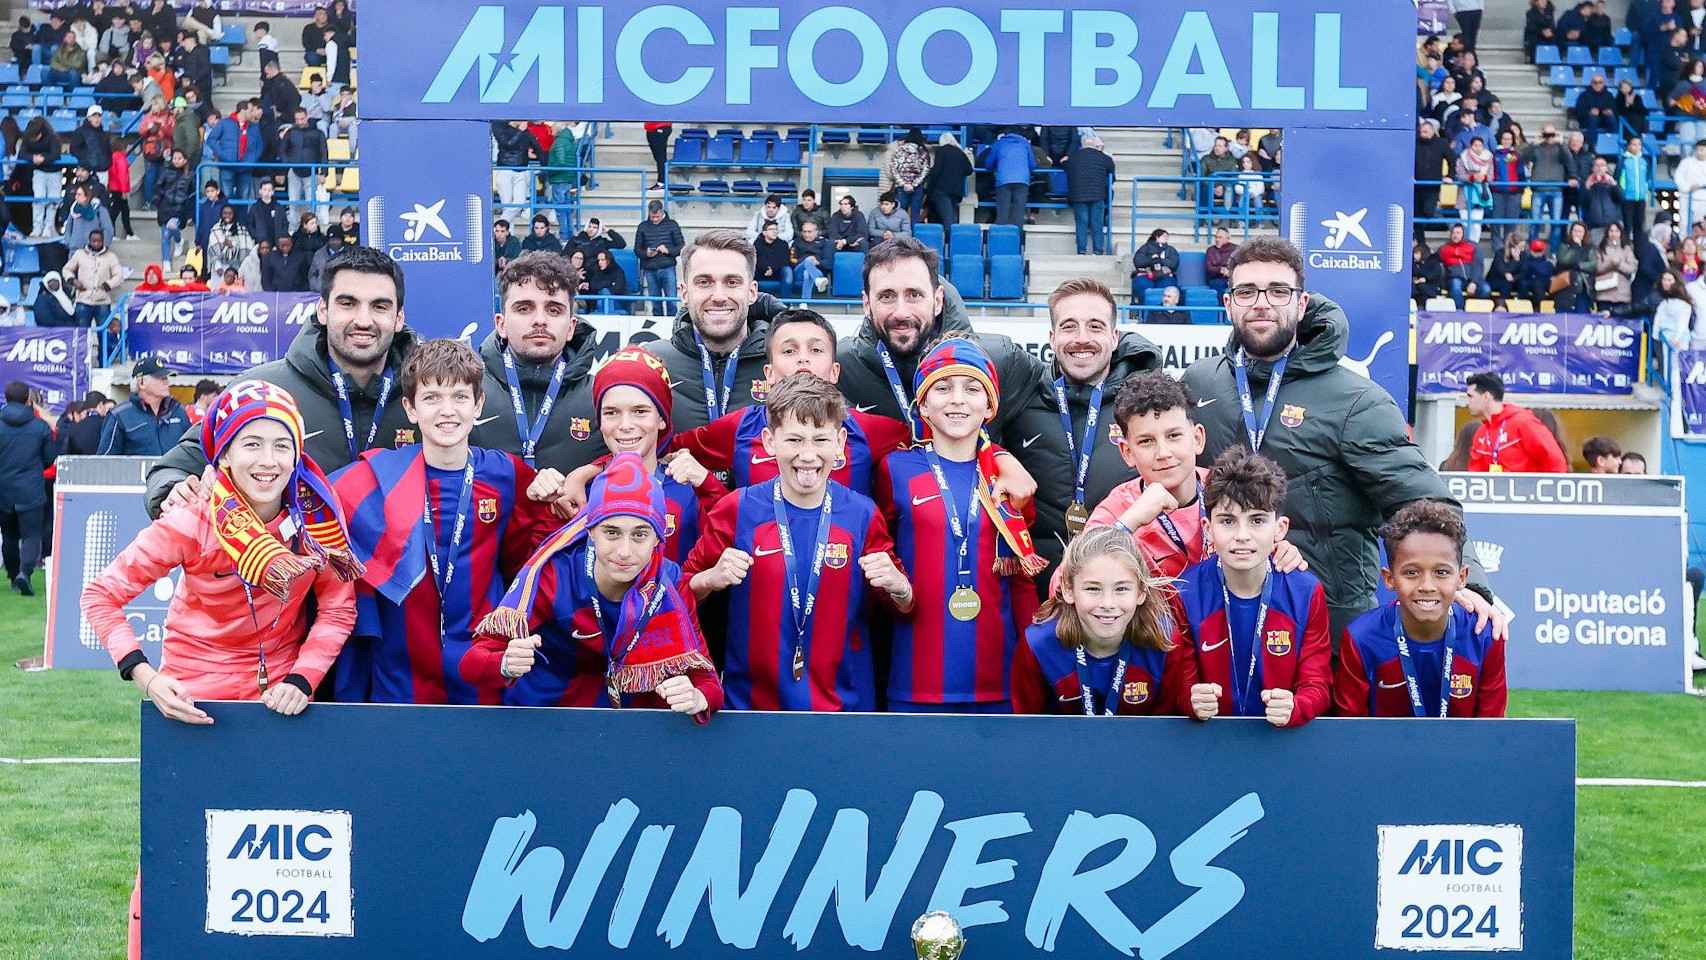 La sub-12 B del Barça se corona campeona del MIC Football 2024